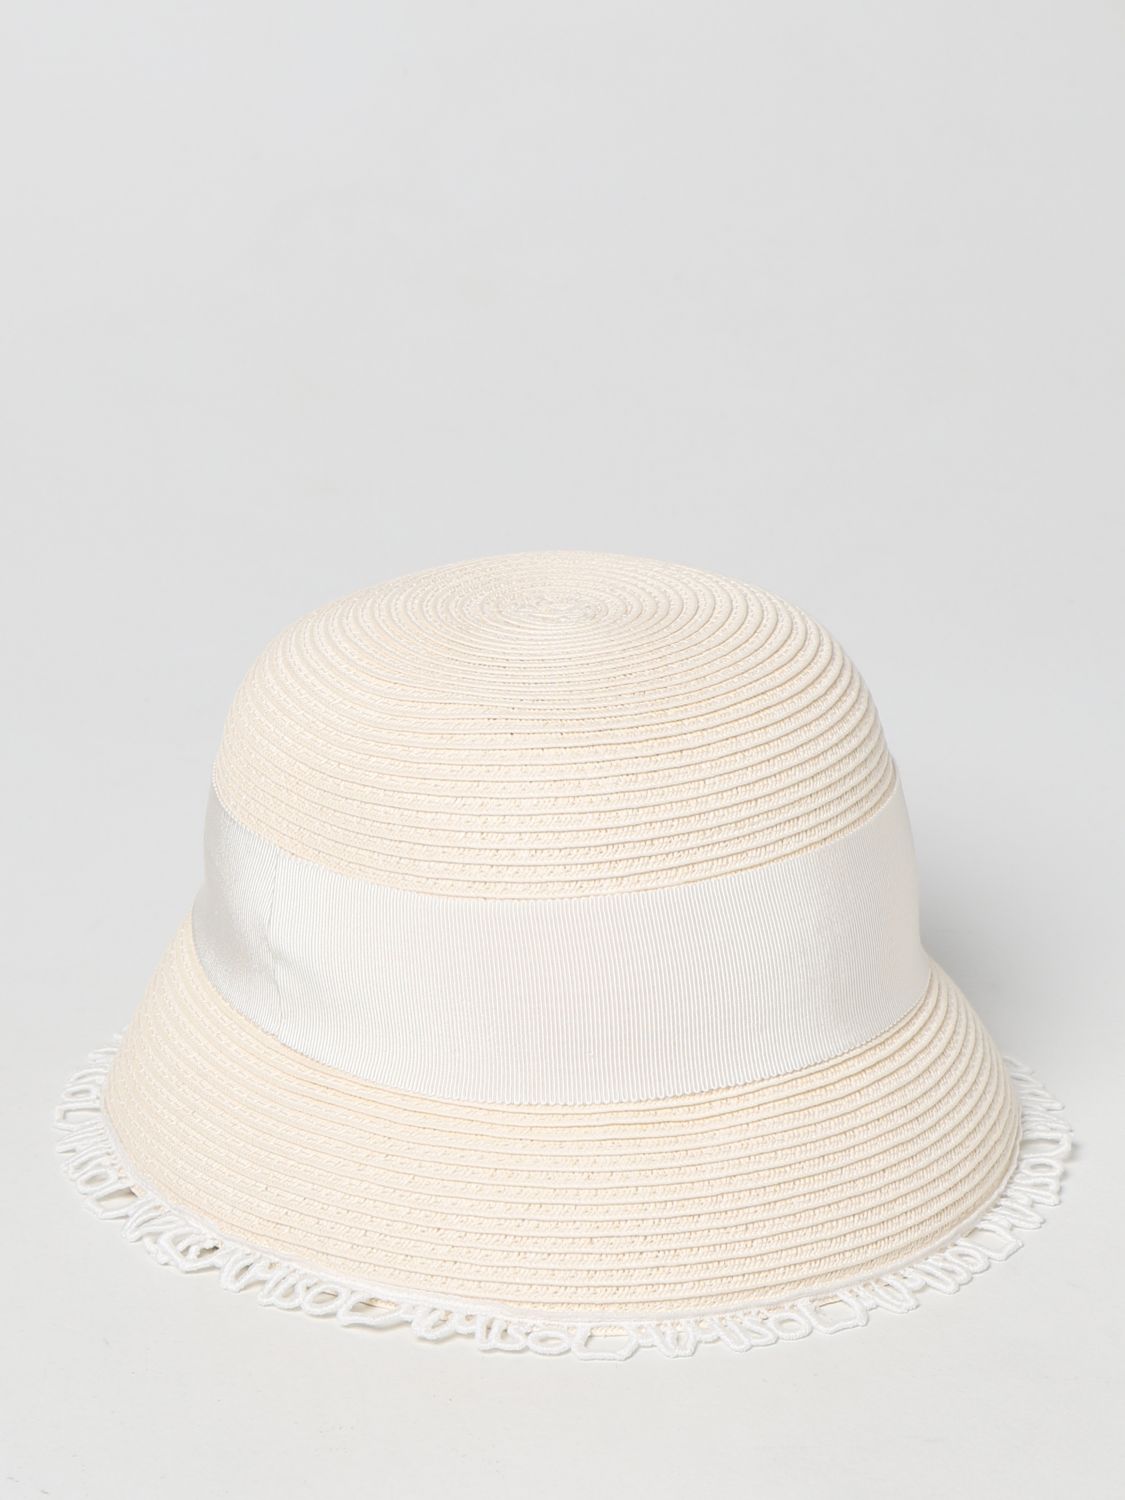 Girls' hats Mi Mi Sol: Mi Mi Sol hat in woven straw yellow cream 2